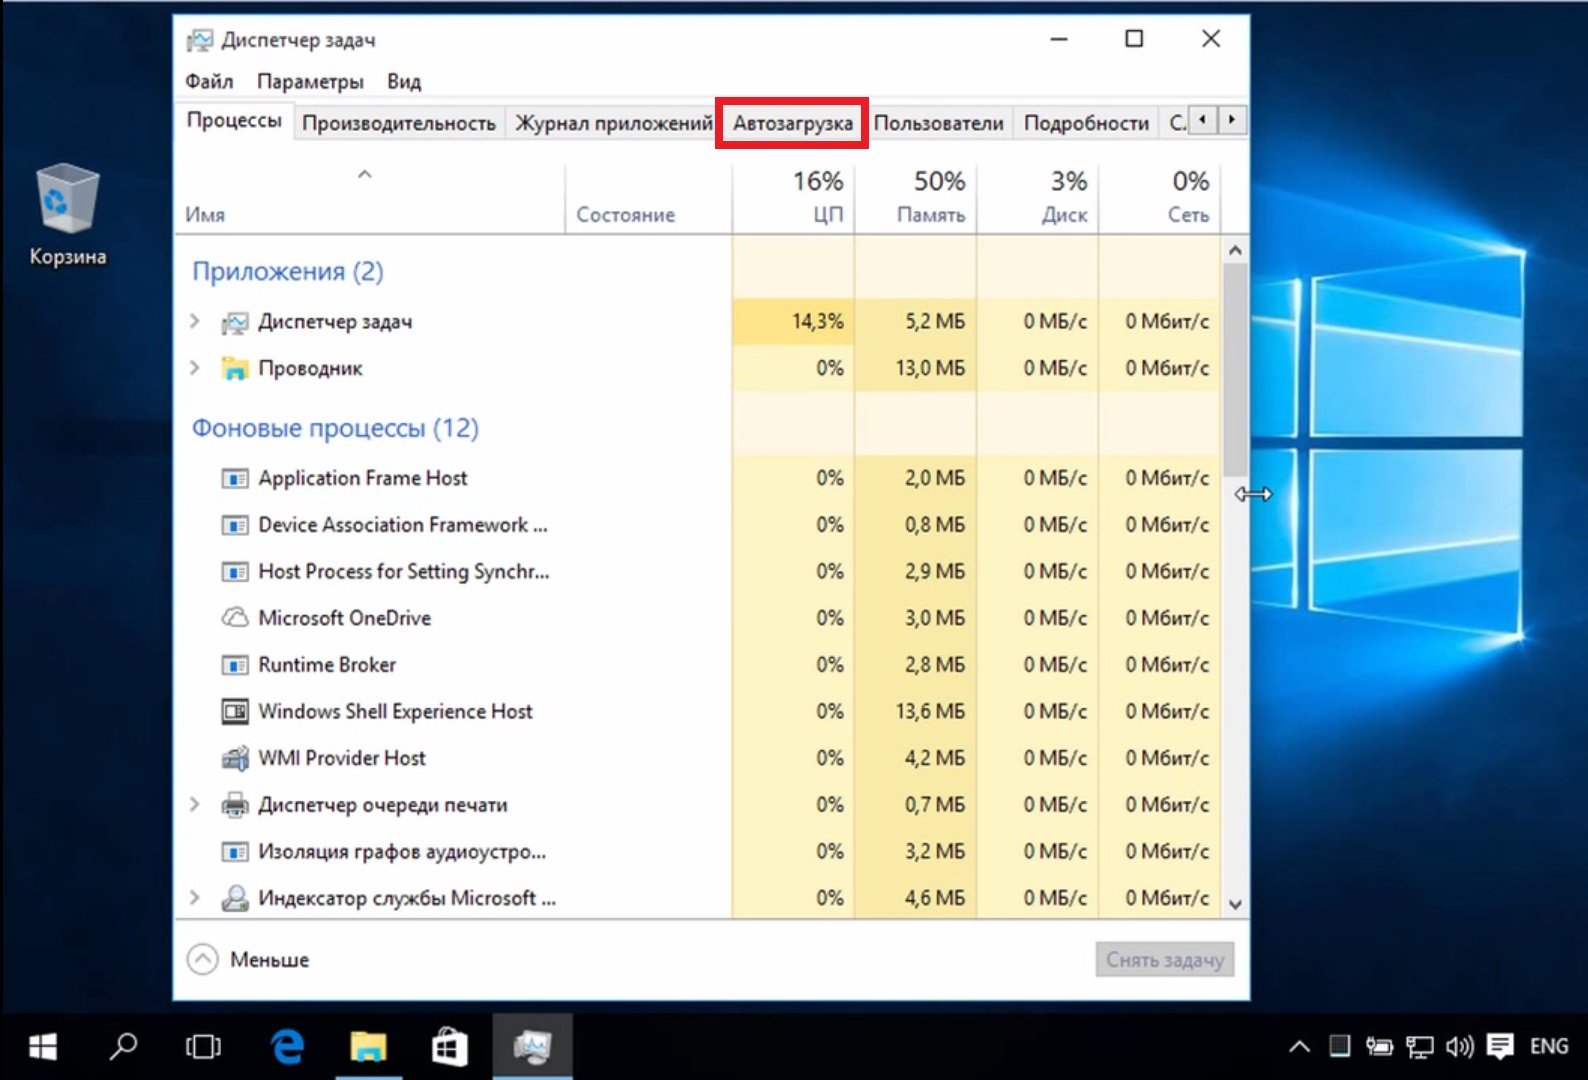 Как Проверить Ноутбук На Производительность Windows 10